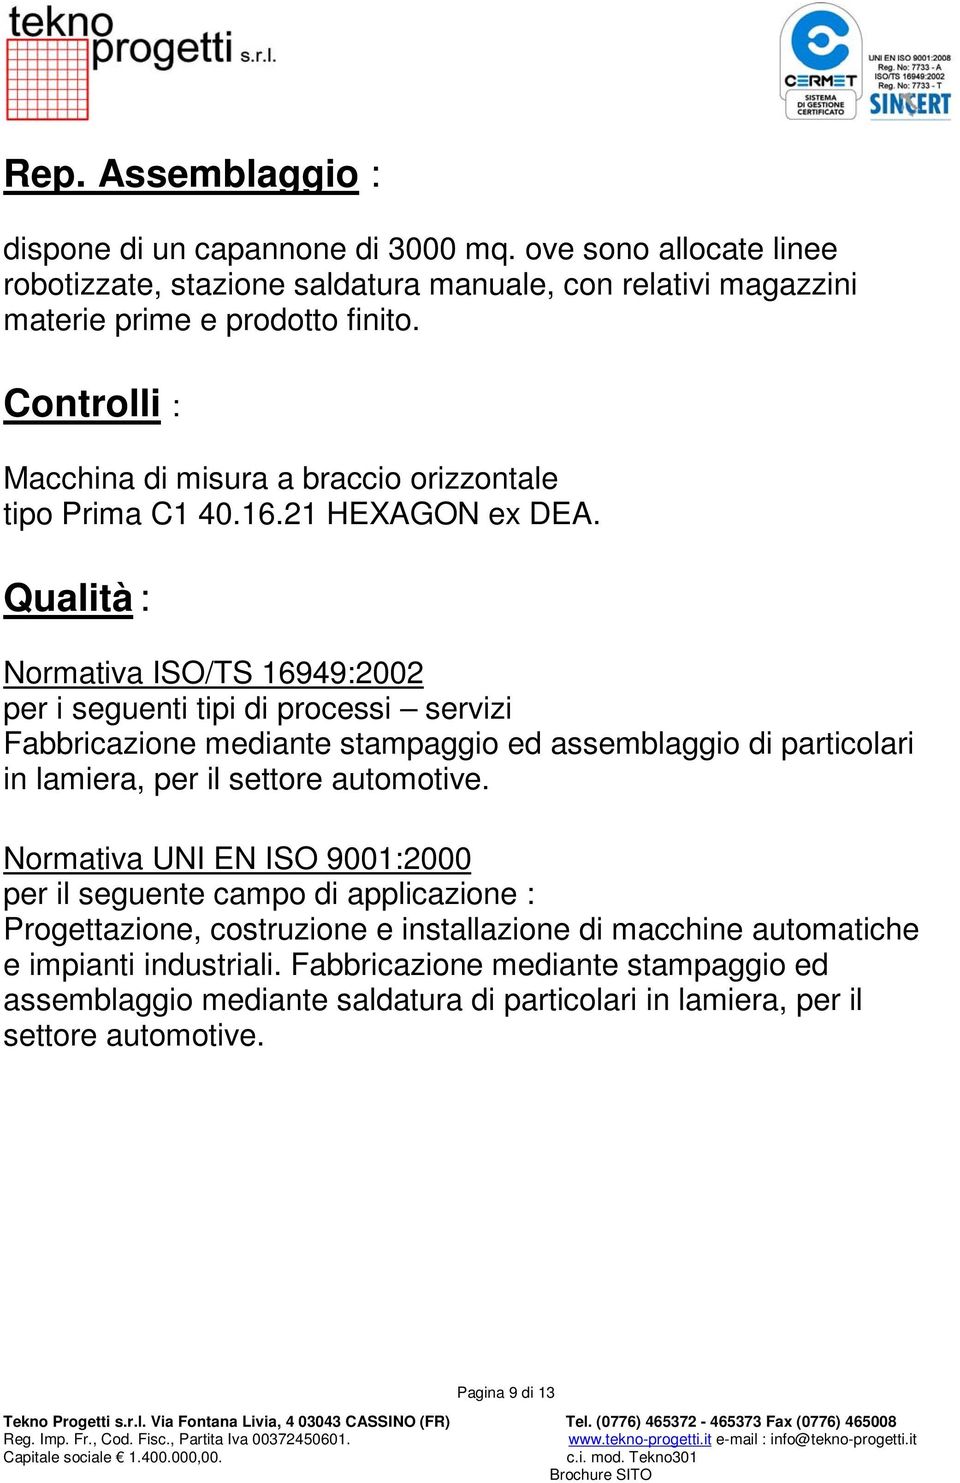 Qualità : Normativa ISO/TS 16949:2002 per i seguenti tipi di processi servizi Fabbricazione mediante stampaggio ed assemblaggio di particolari in lamiera, per il settore automotive.